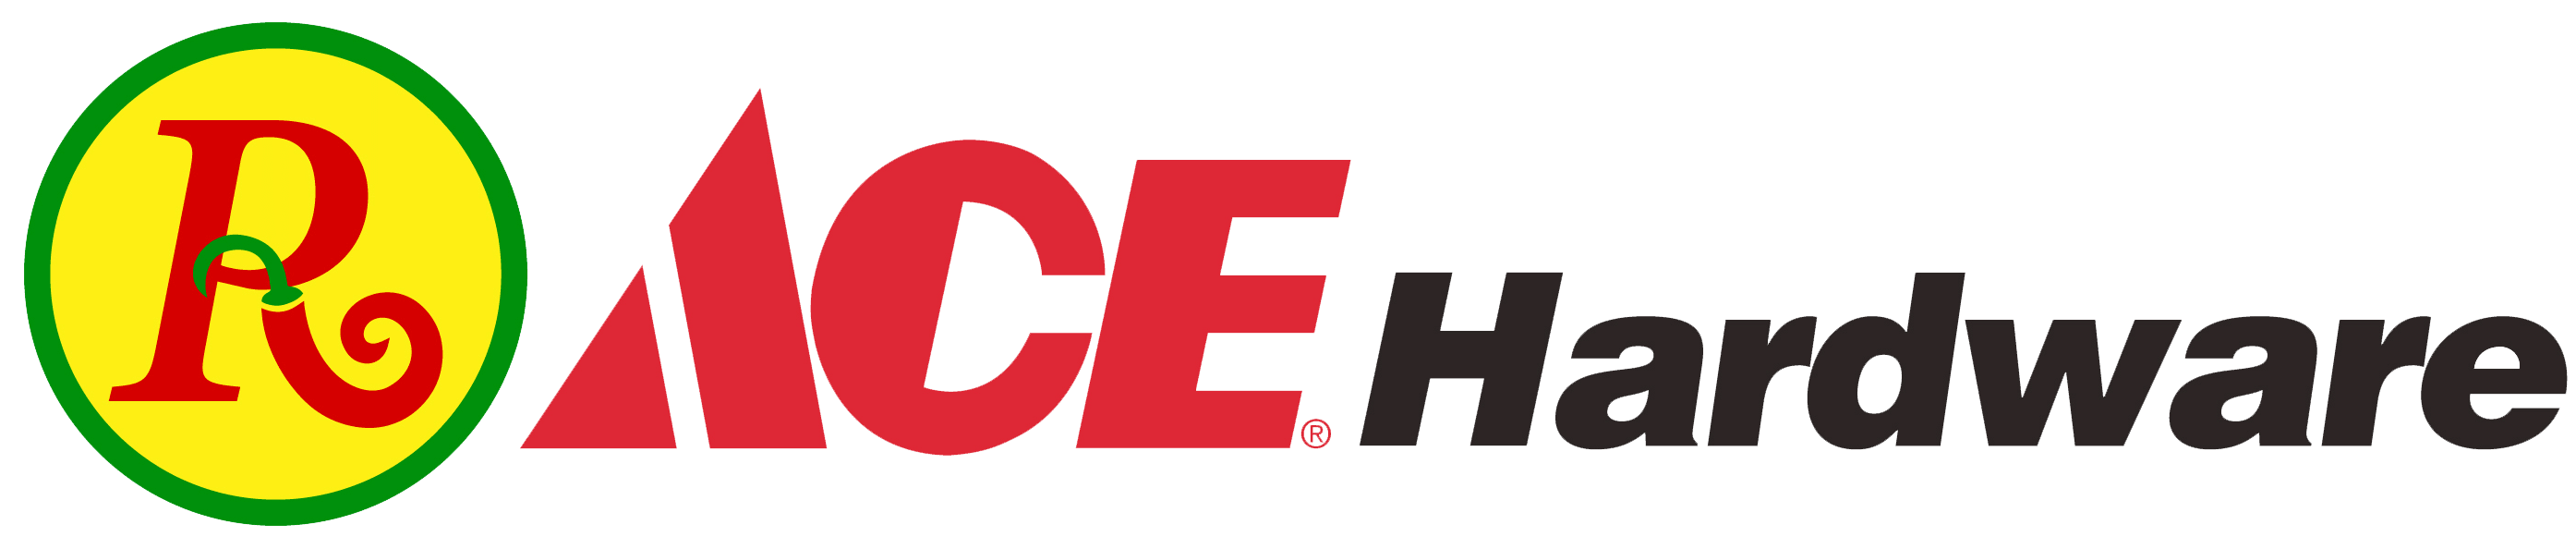 Ace hardware logo